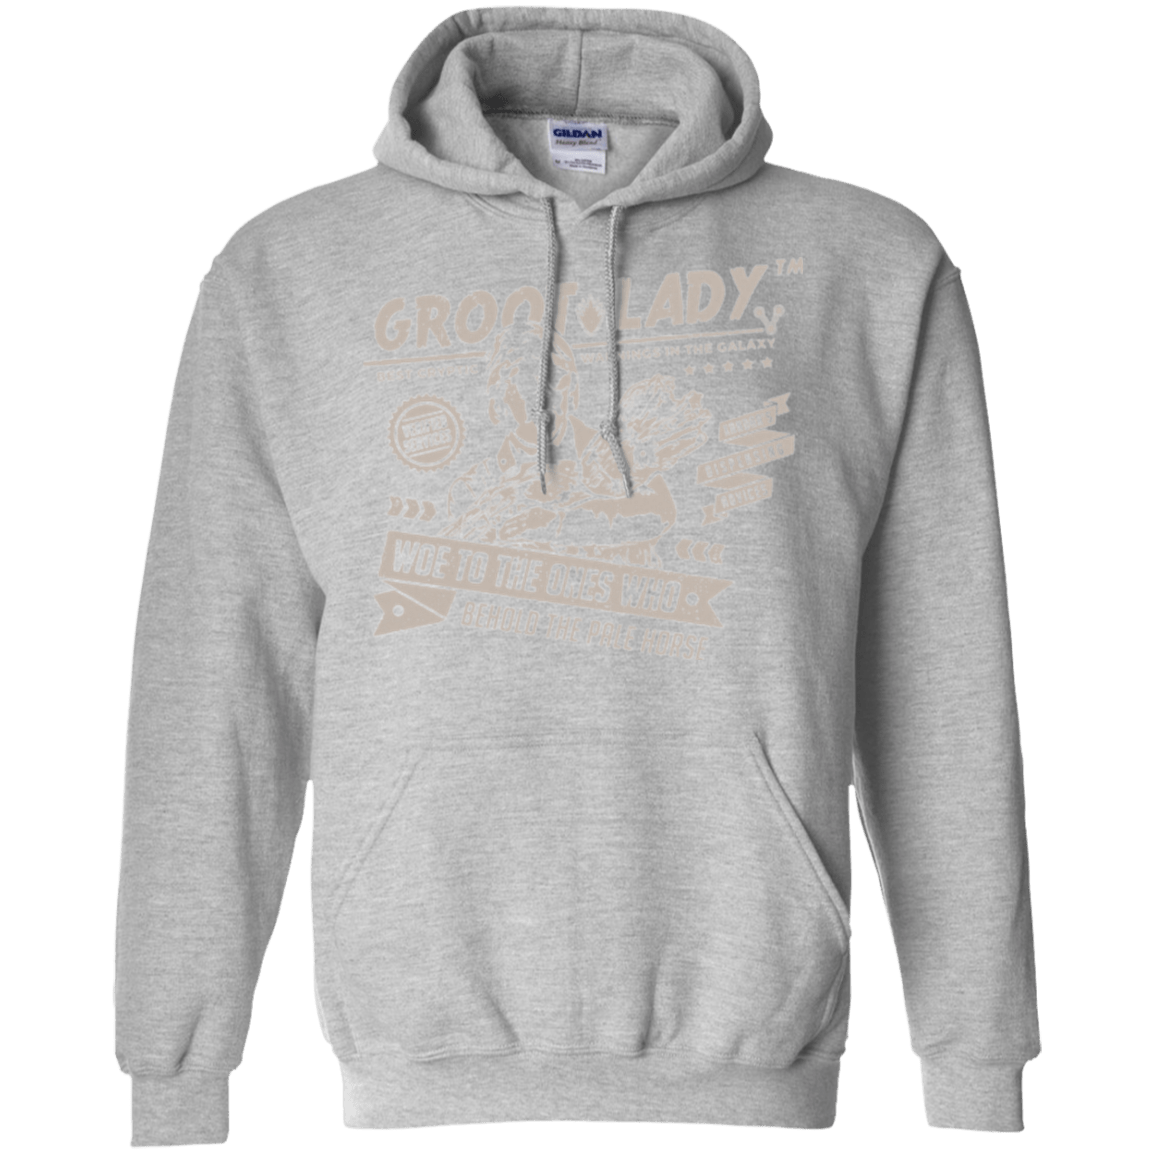 Sweatshirts Sport Grey / Small Groot Lady Pullover Hoodie